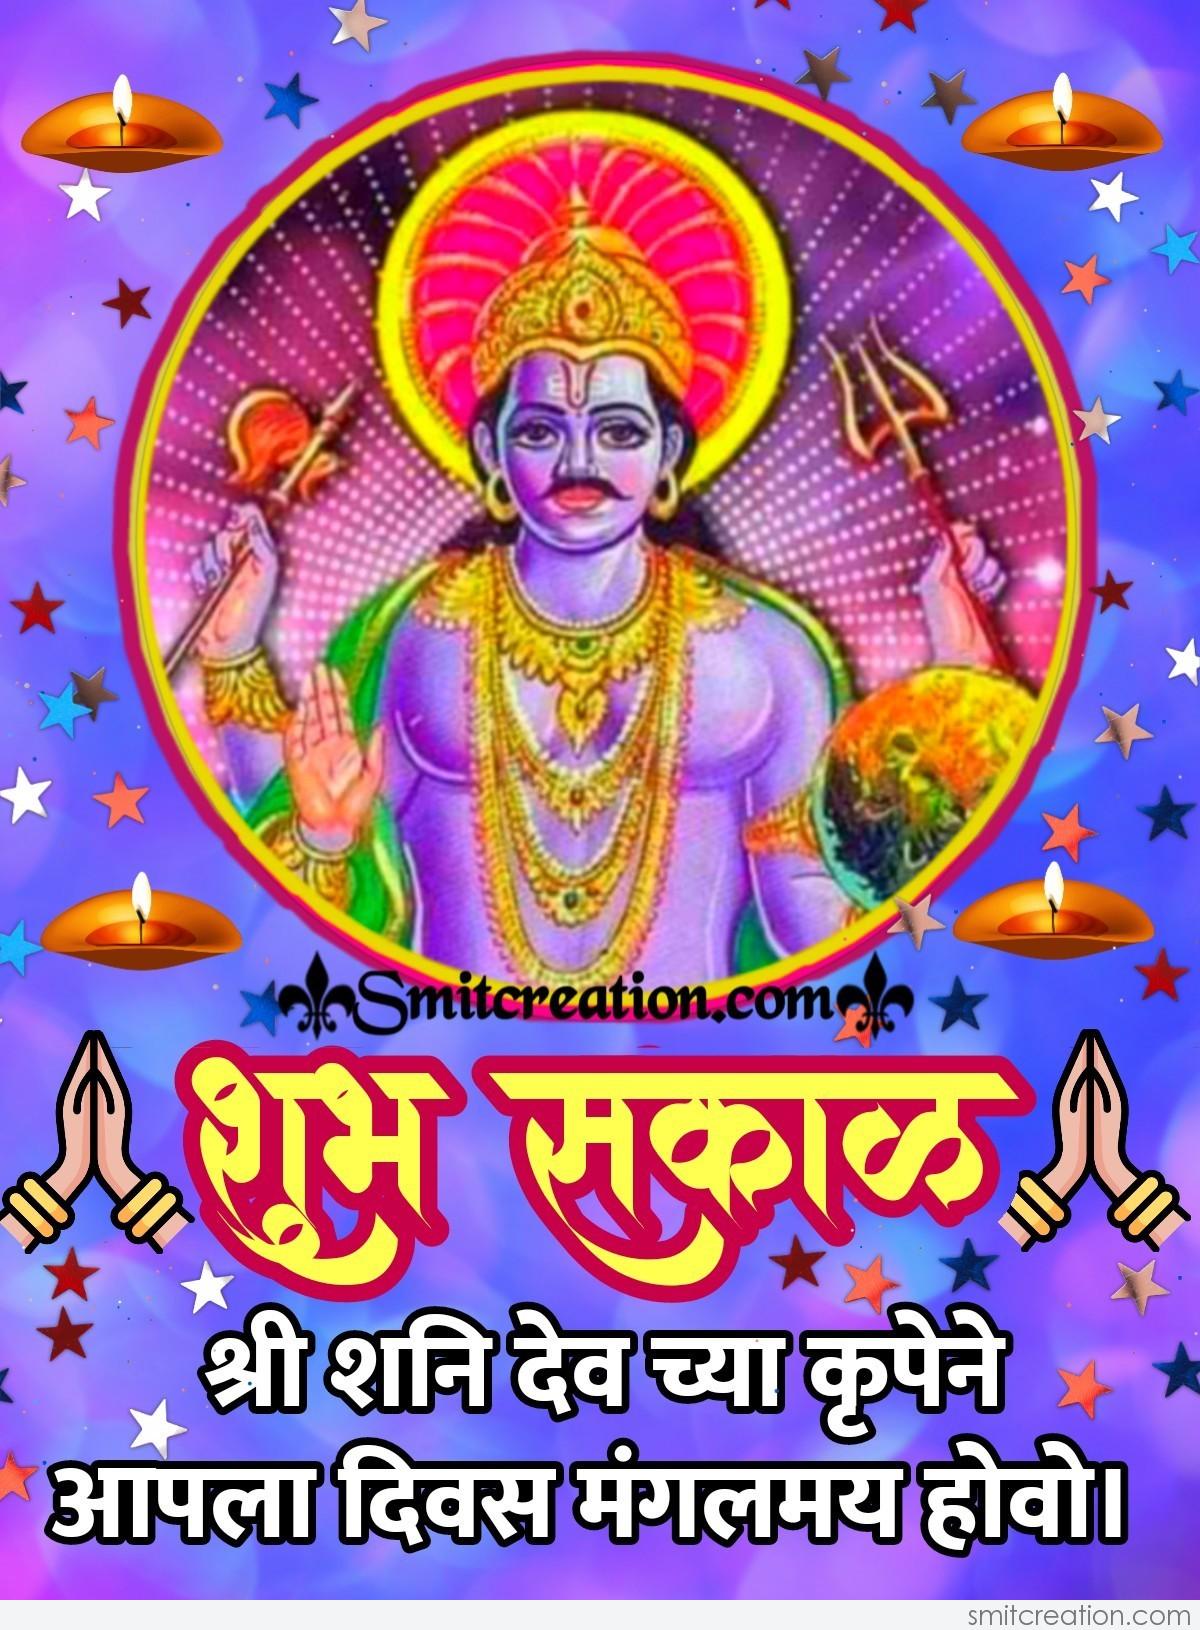 Shubh Sakal Shri Shanidev Chi Krupa Smitcreation Com